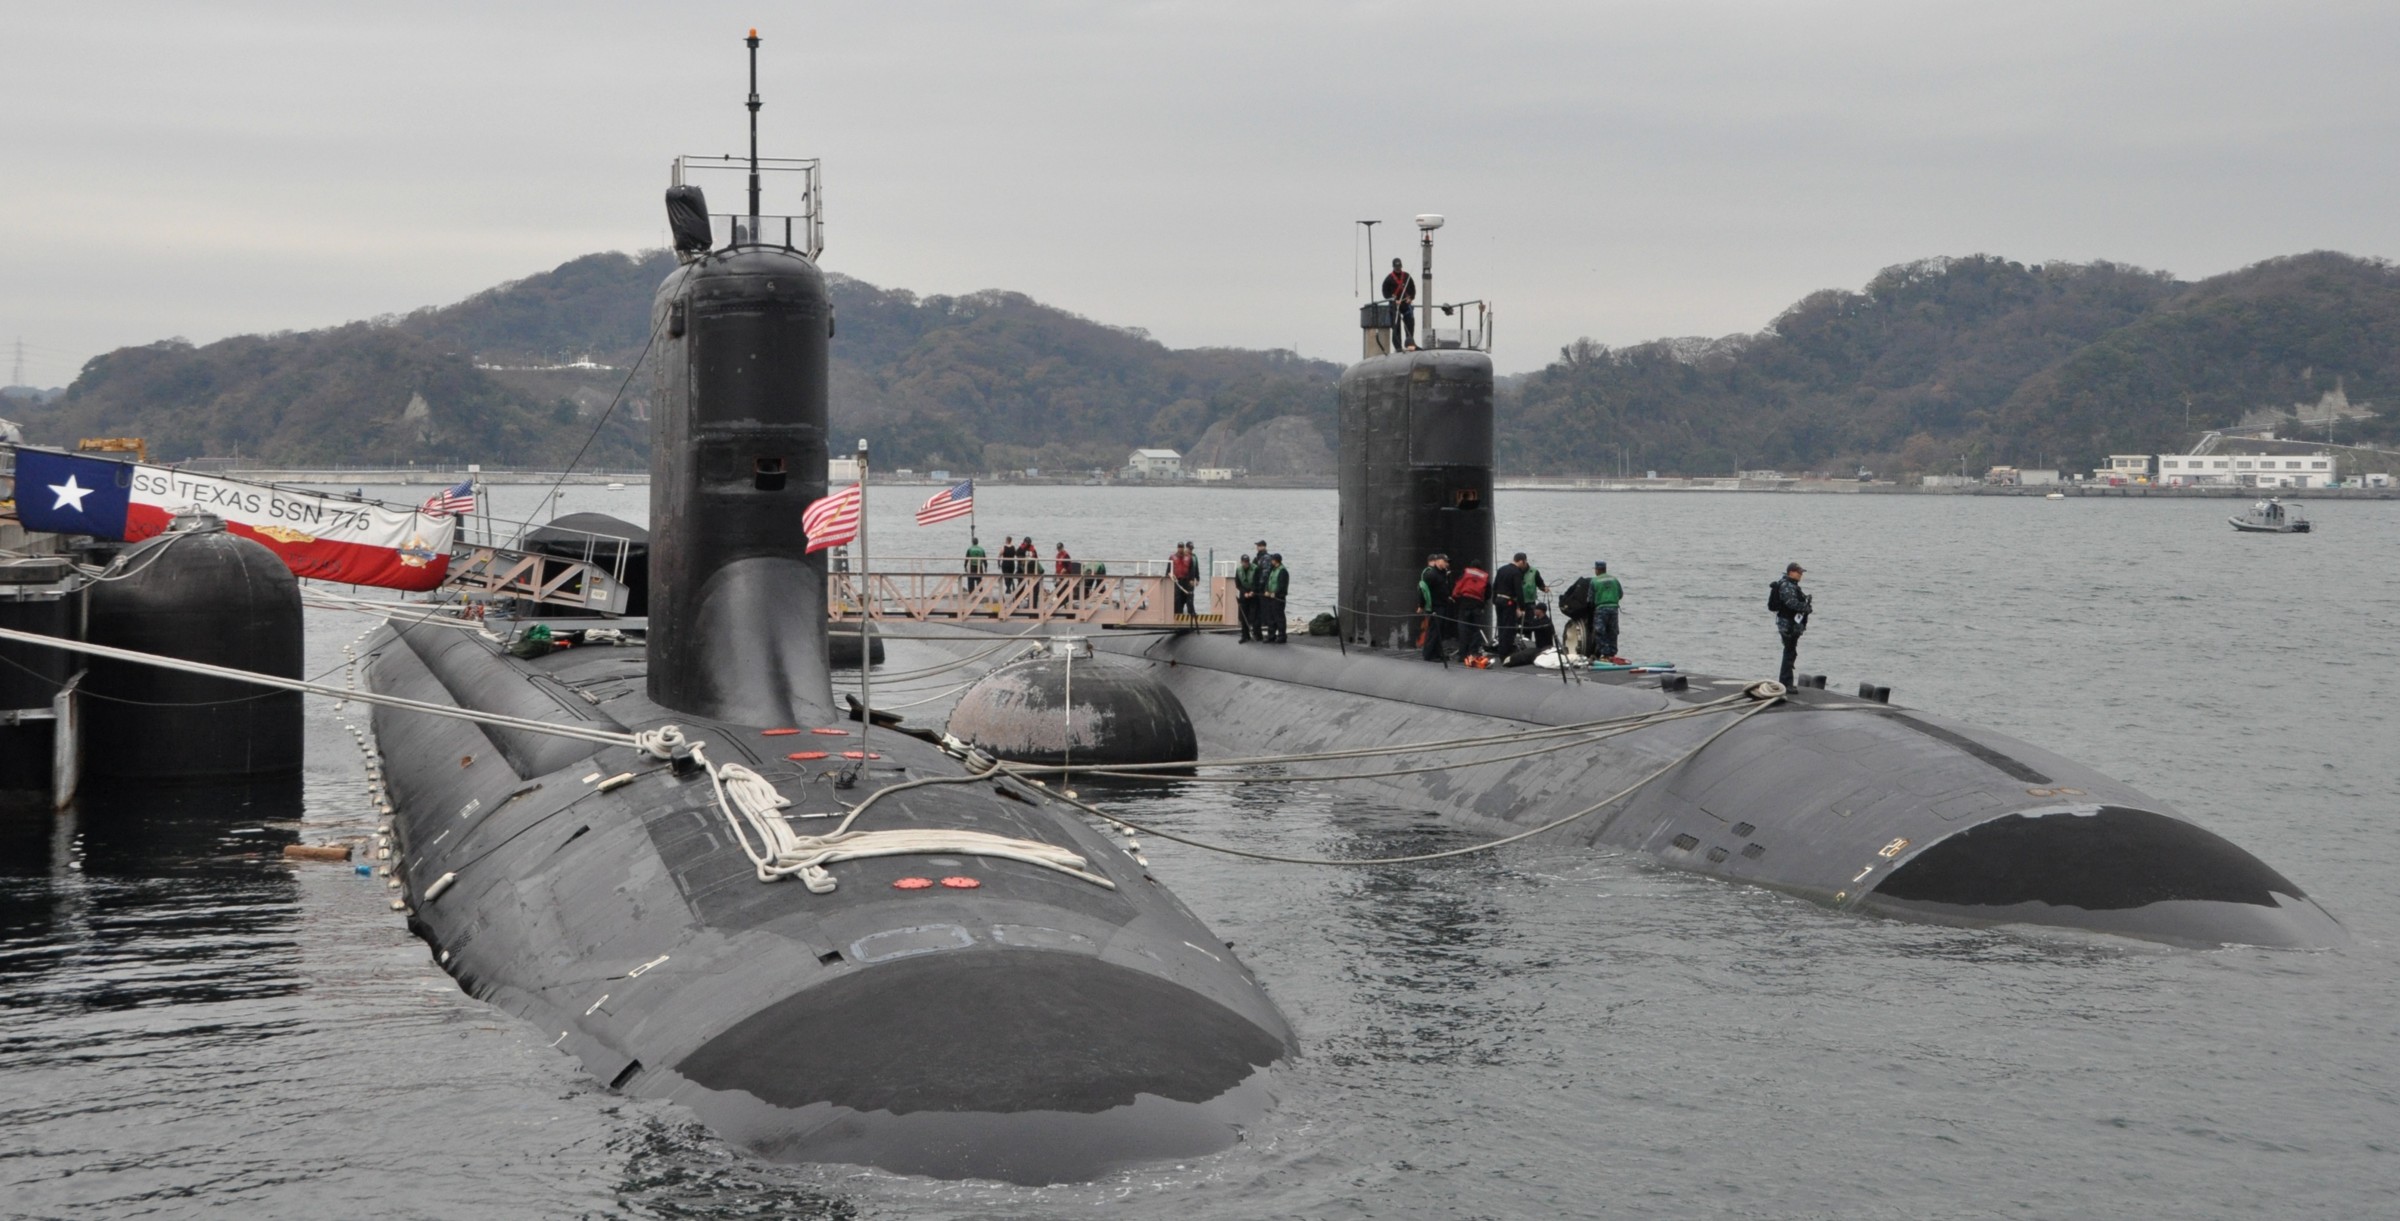 ssn-775 uss texas virginia class attack submarine navy 2015 08 yokosuka